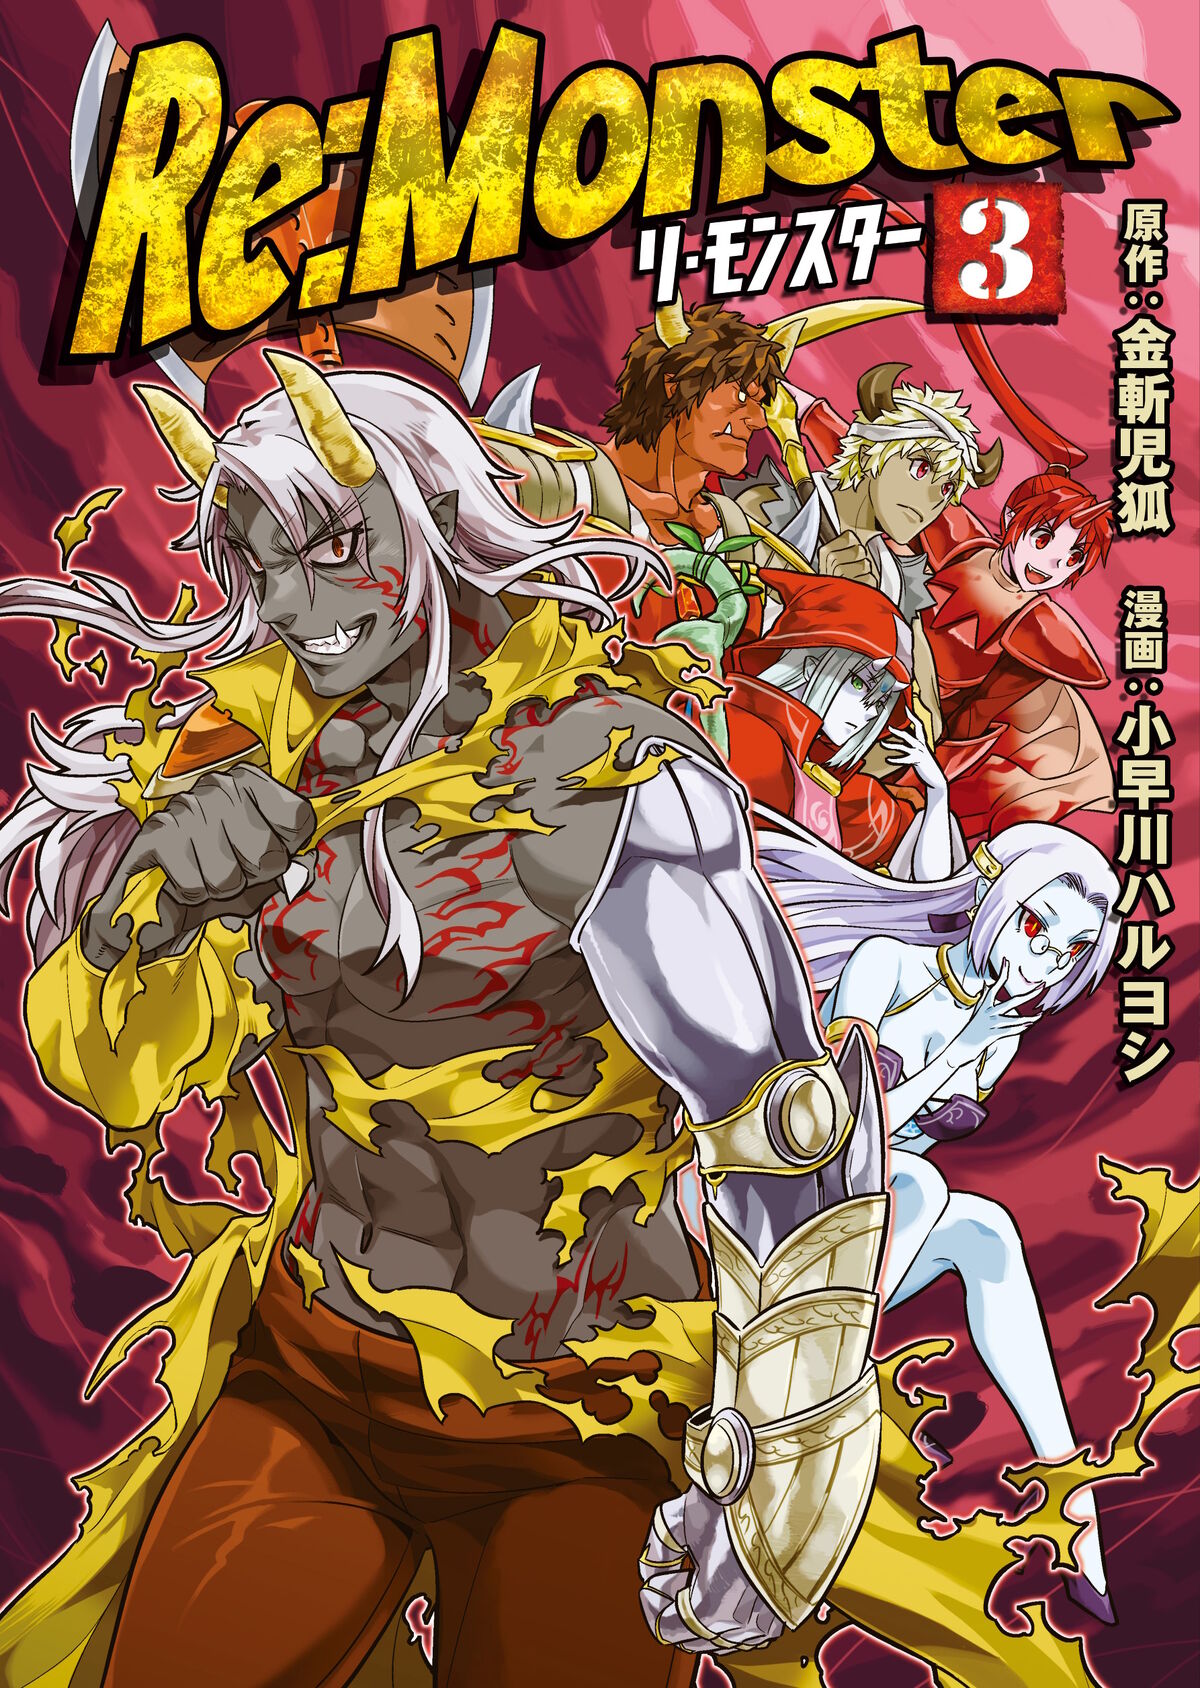 Manga Volume 3 | Re:Monster Wiki | Fandom